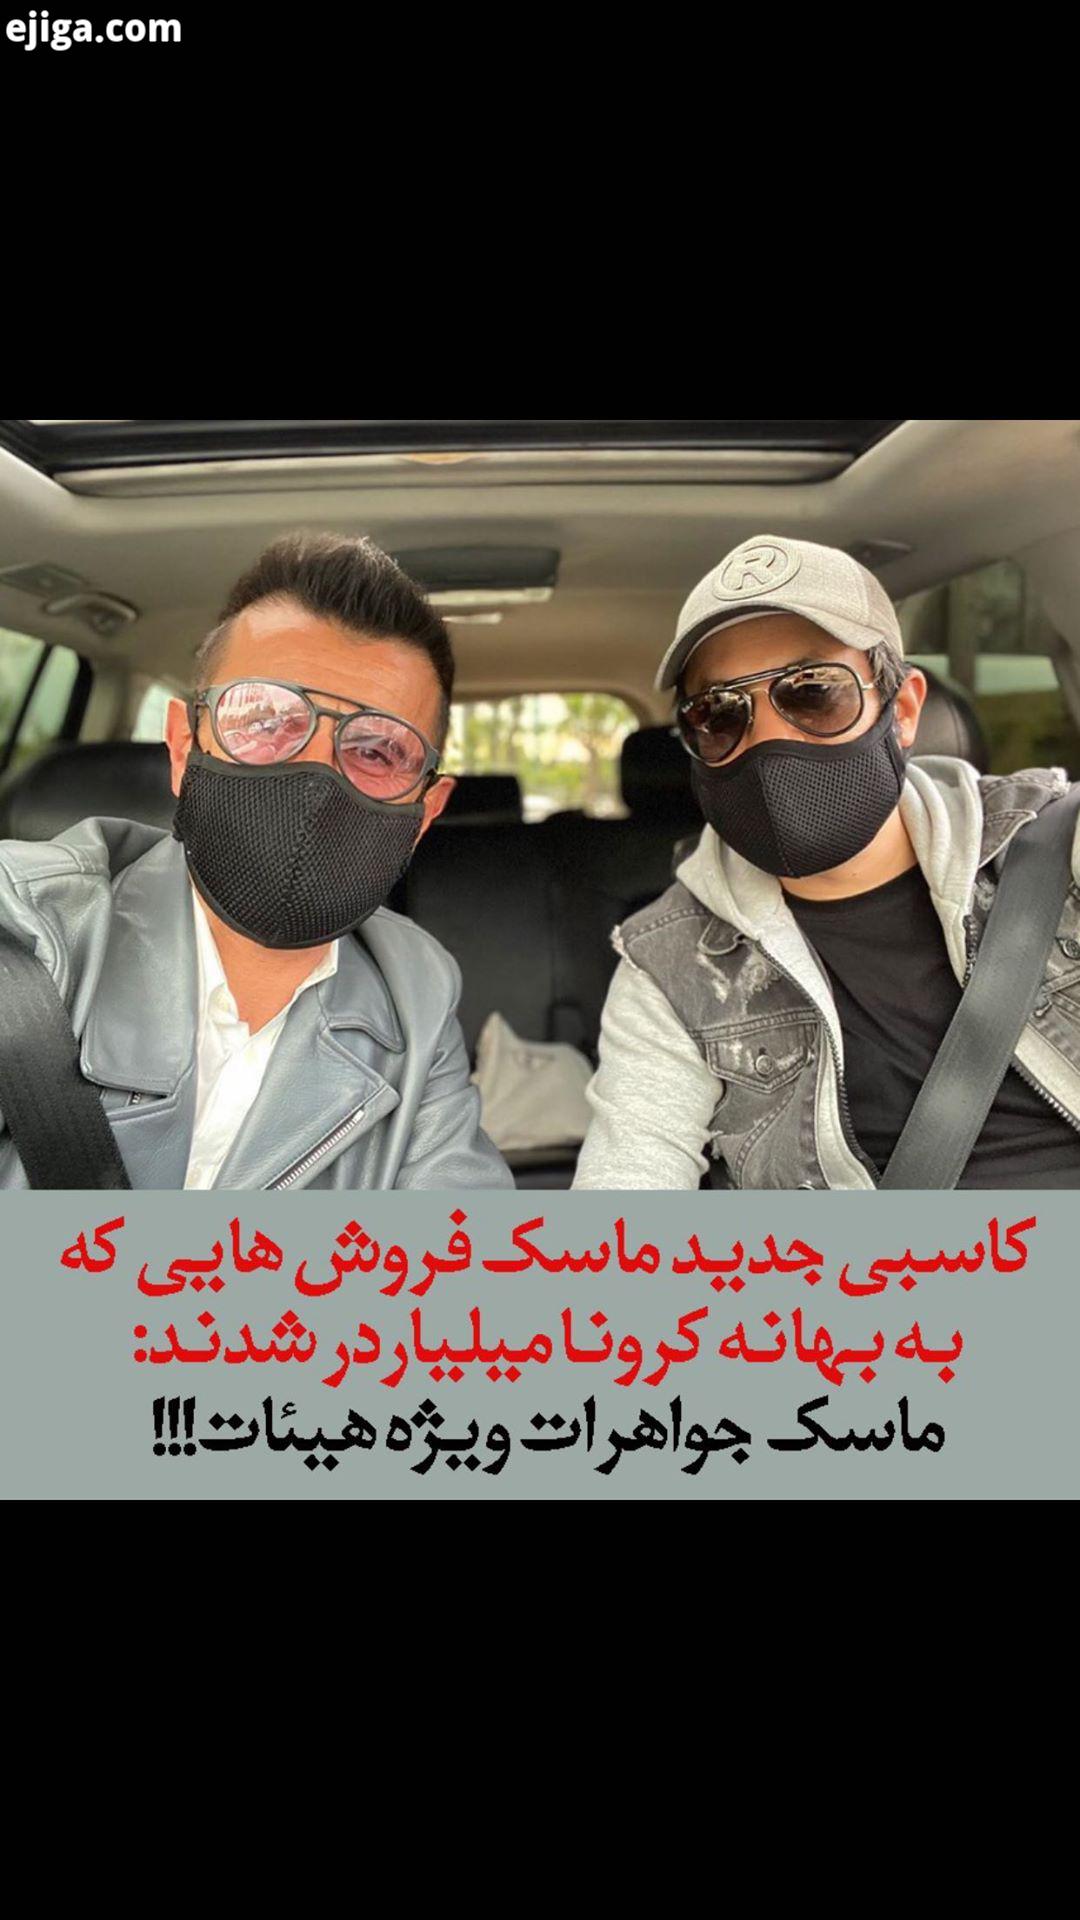 ماسک جواهرات ویژه هیئات تی وی پلاس ماسک جواهرات محرم